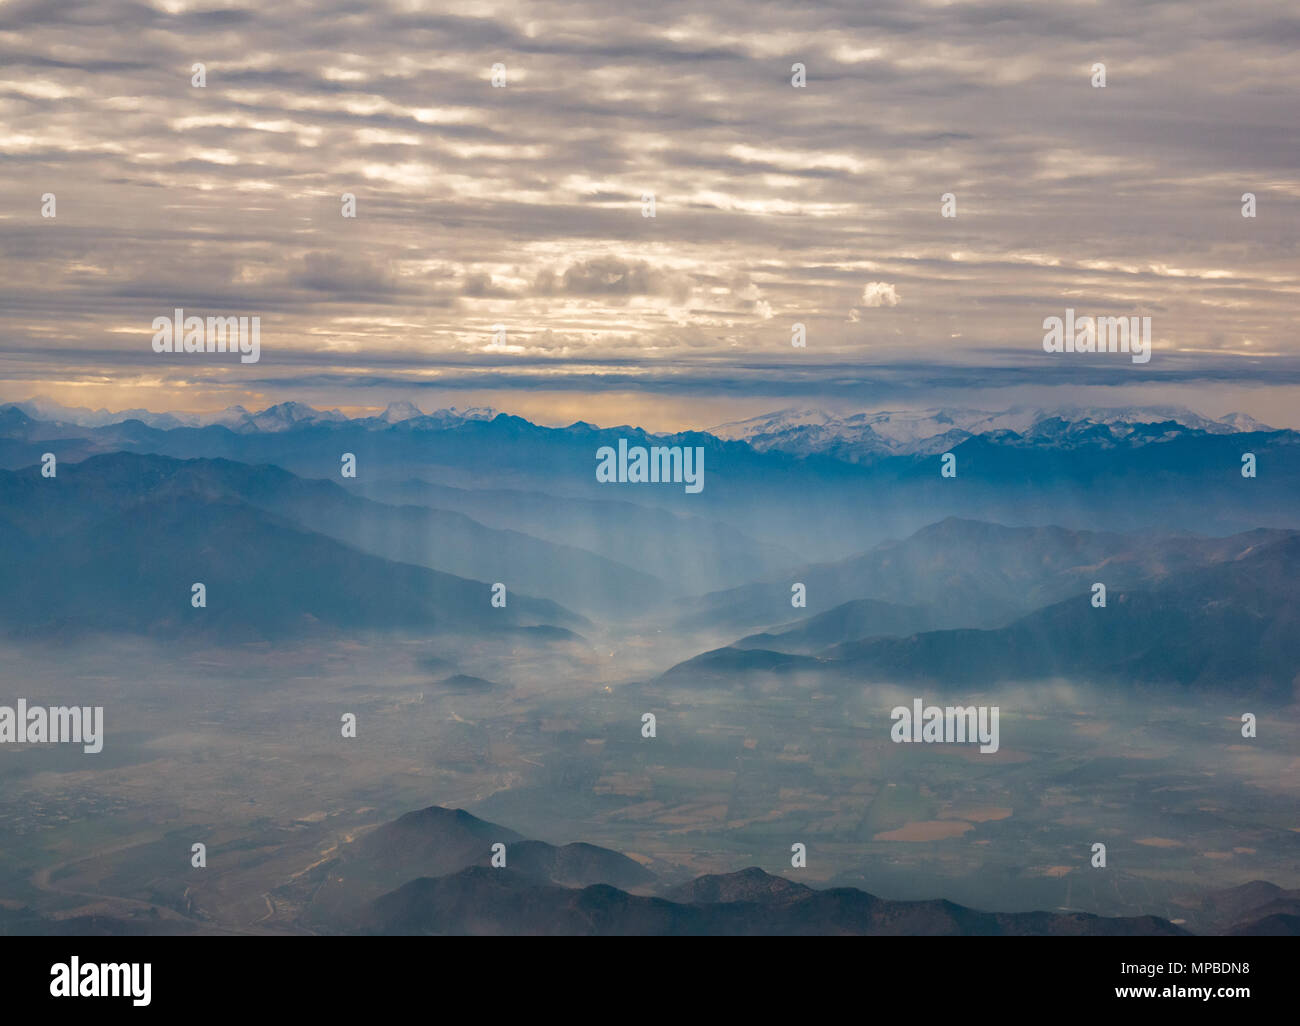 Vue depuis la fenêtre de l'avion volant au sud de Santiago, au Chili, avec des pics de montagne des Andes et les couches de nuages rompu par faisceaux de lumière tombant sur valley Banque D'Images